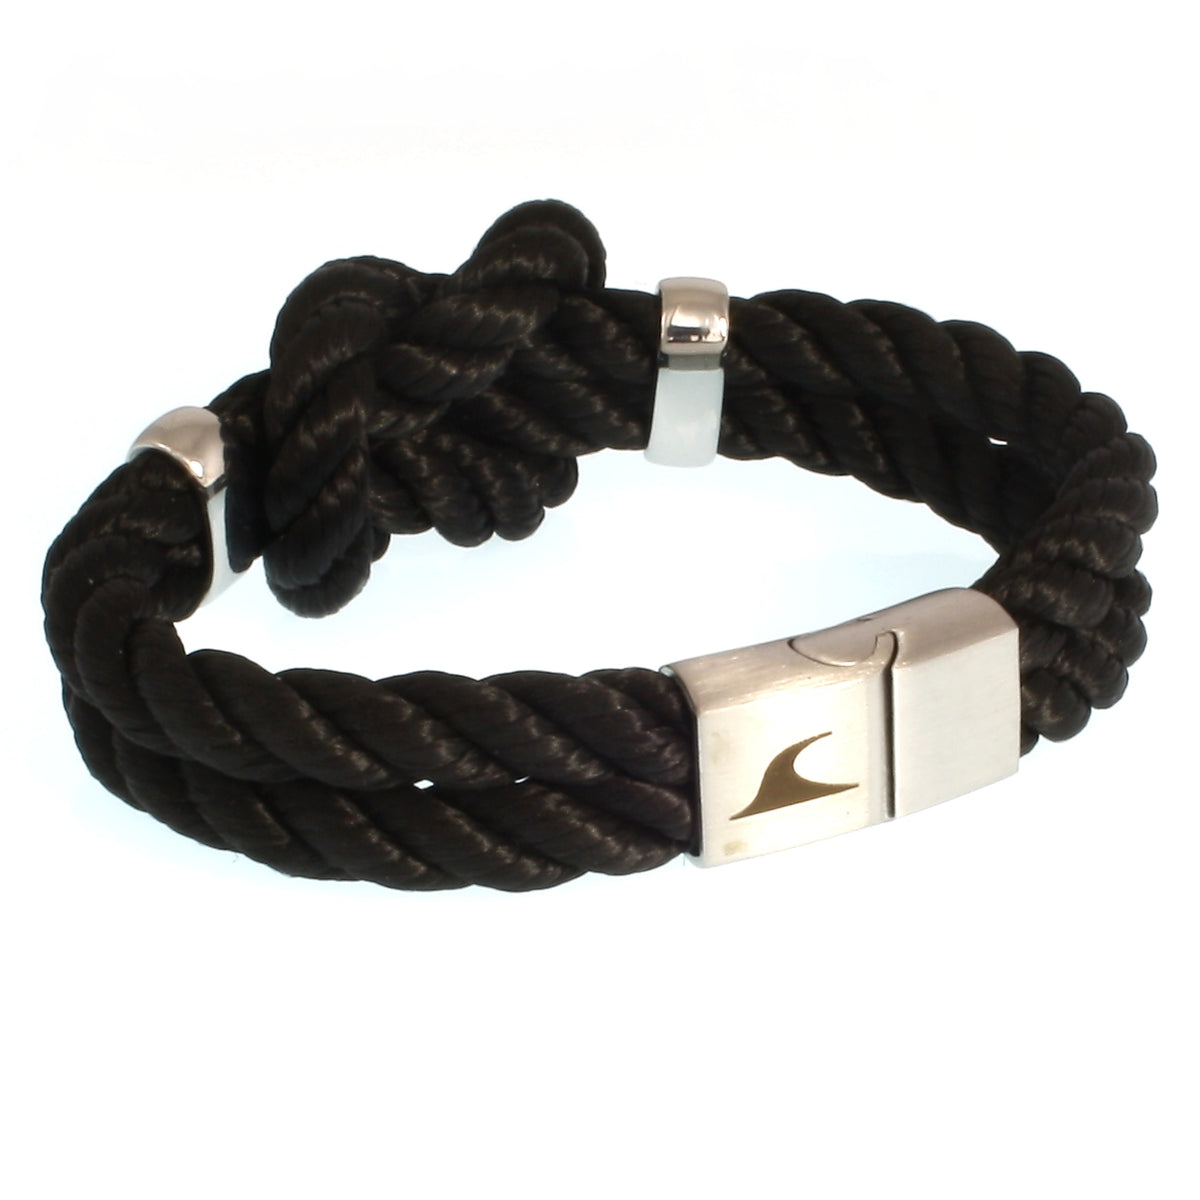 Damen-Segeltau-armband-pure-schwarz-silber-kordel-geflochten-Edelstahlverschluss-vorn-wavepirate-shop-k